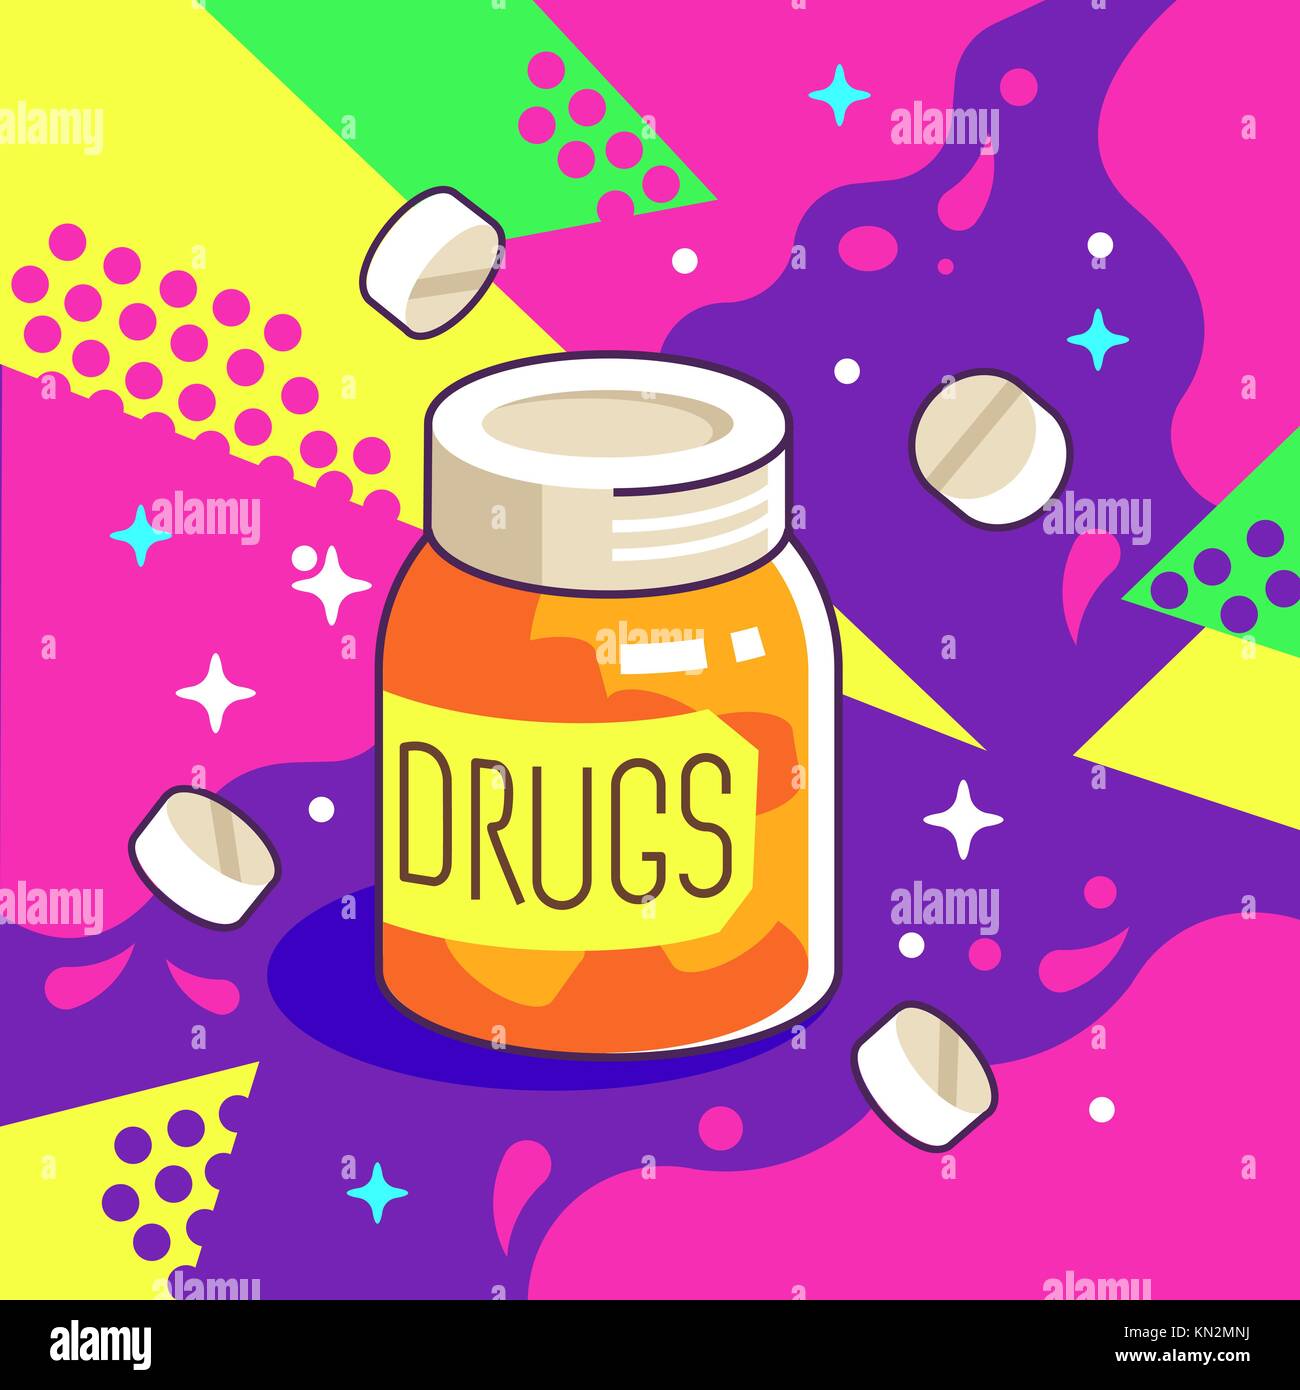 Pharmacy Drugs Jar Vector Illustration in Pop Art Style Stock Vector